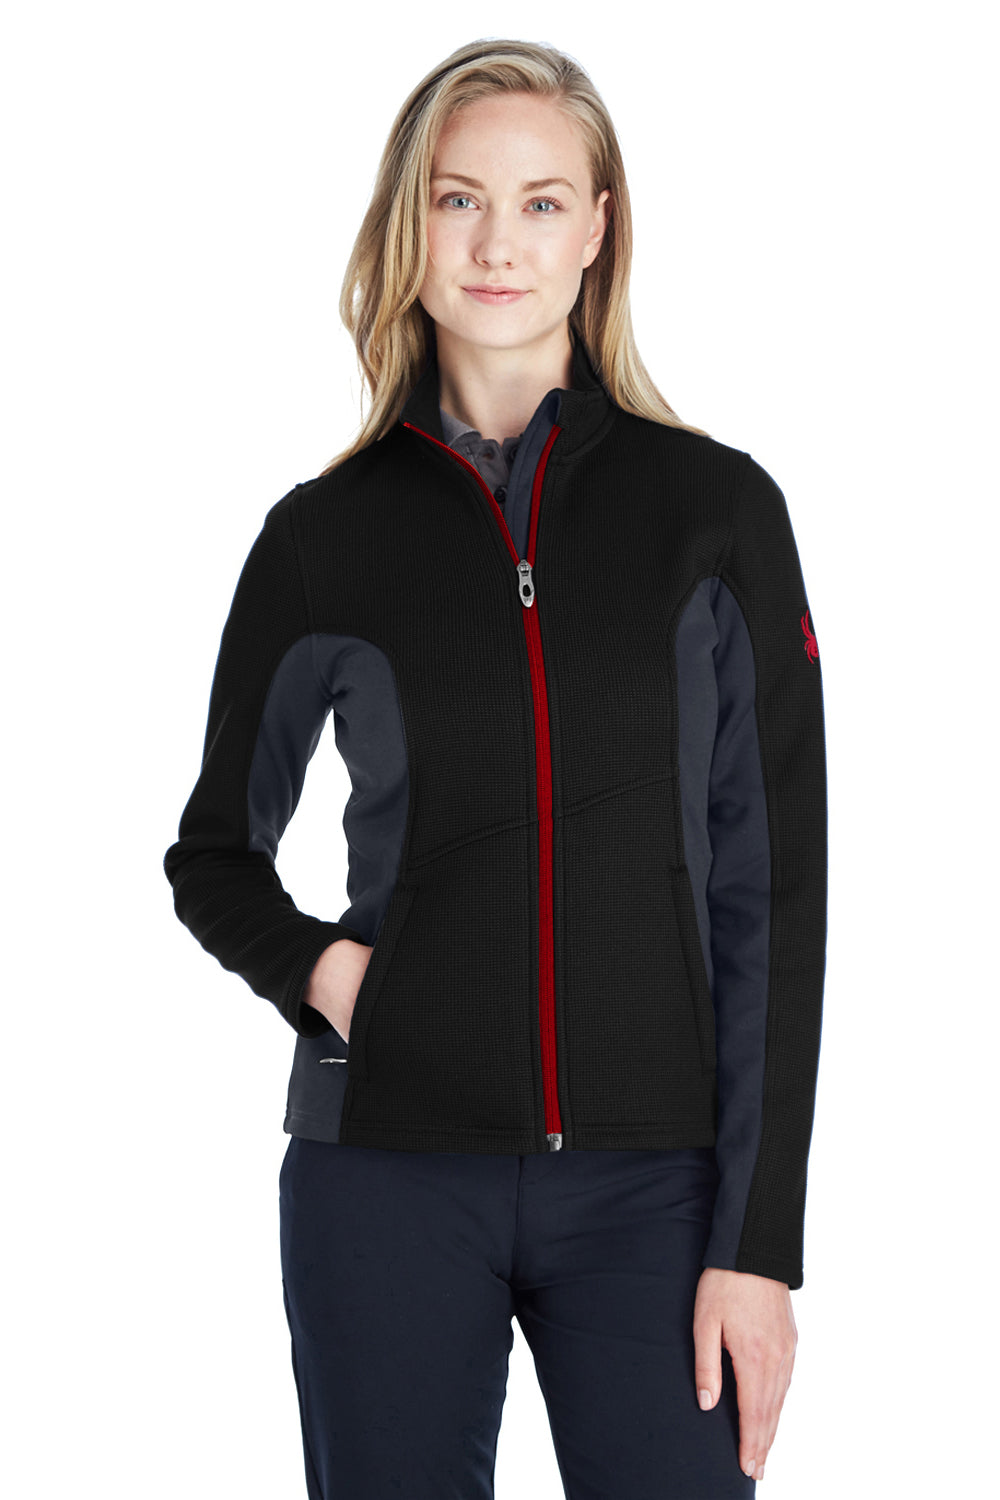 Spyder Womens Constant Full Zip Sweater Fleece Jacket - Black